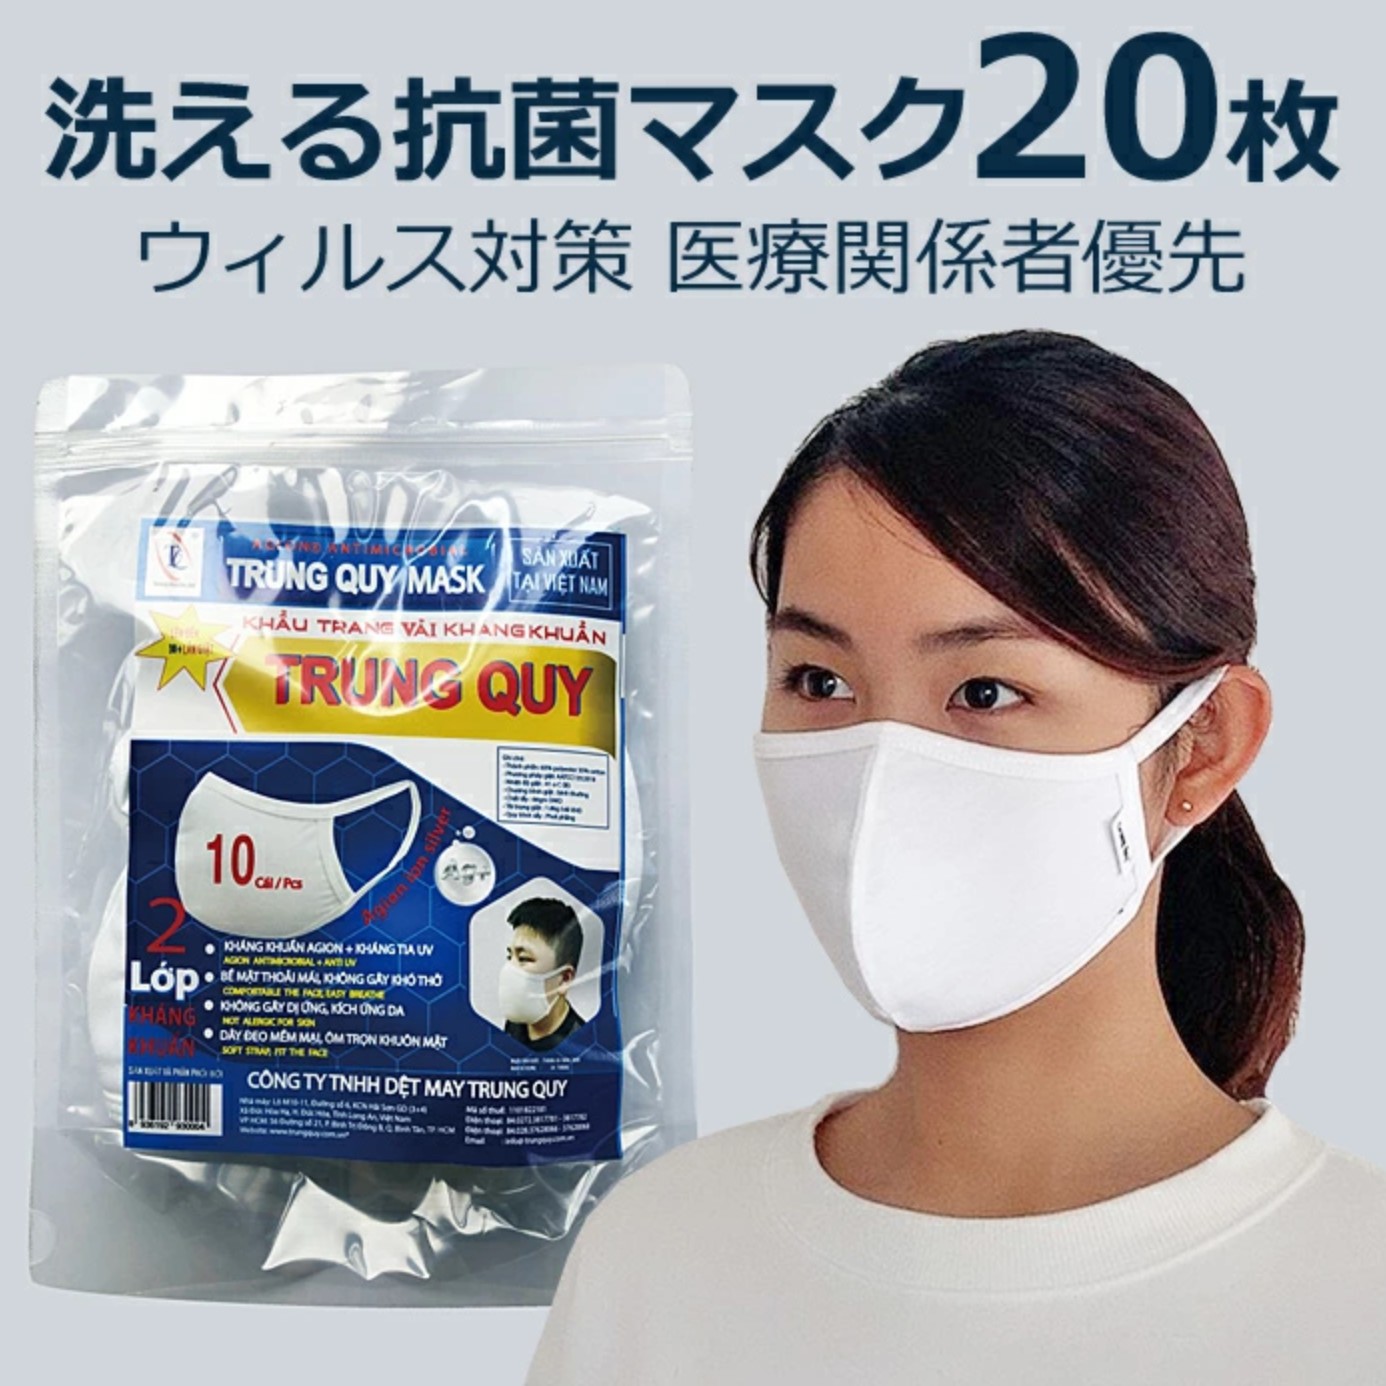 洗える抗菌マスク 20枚入 [二層構造 抗菌 低刺激 ソフトストラップ]